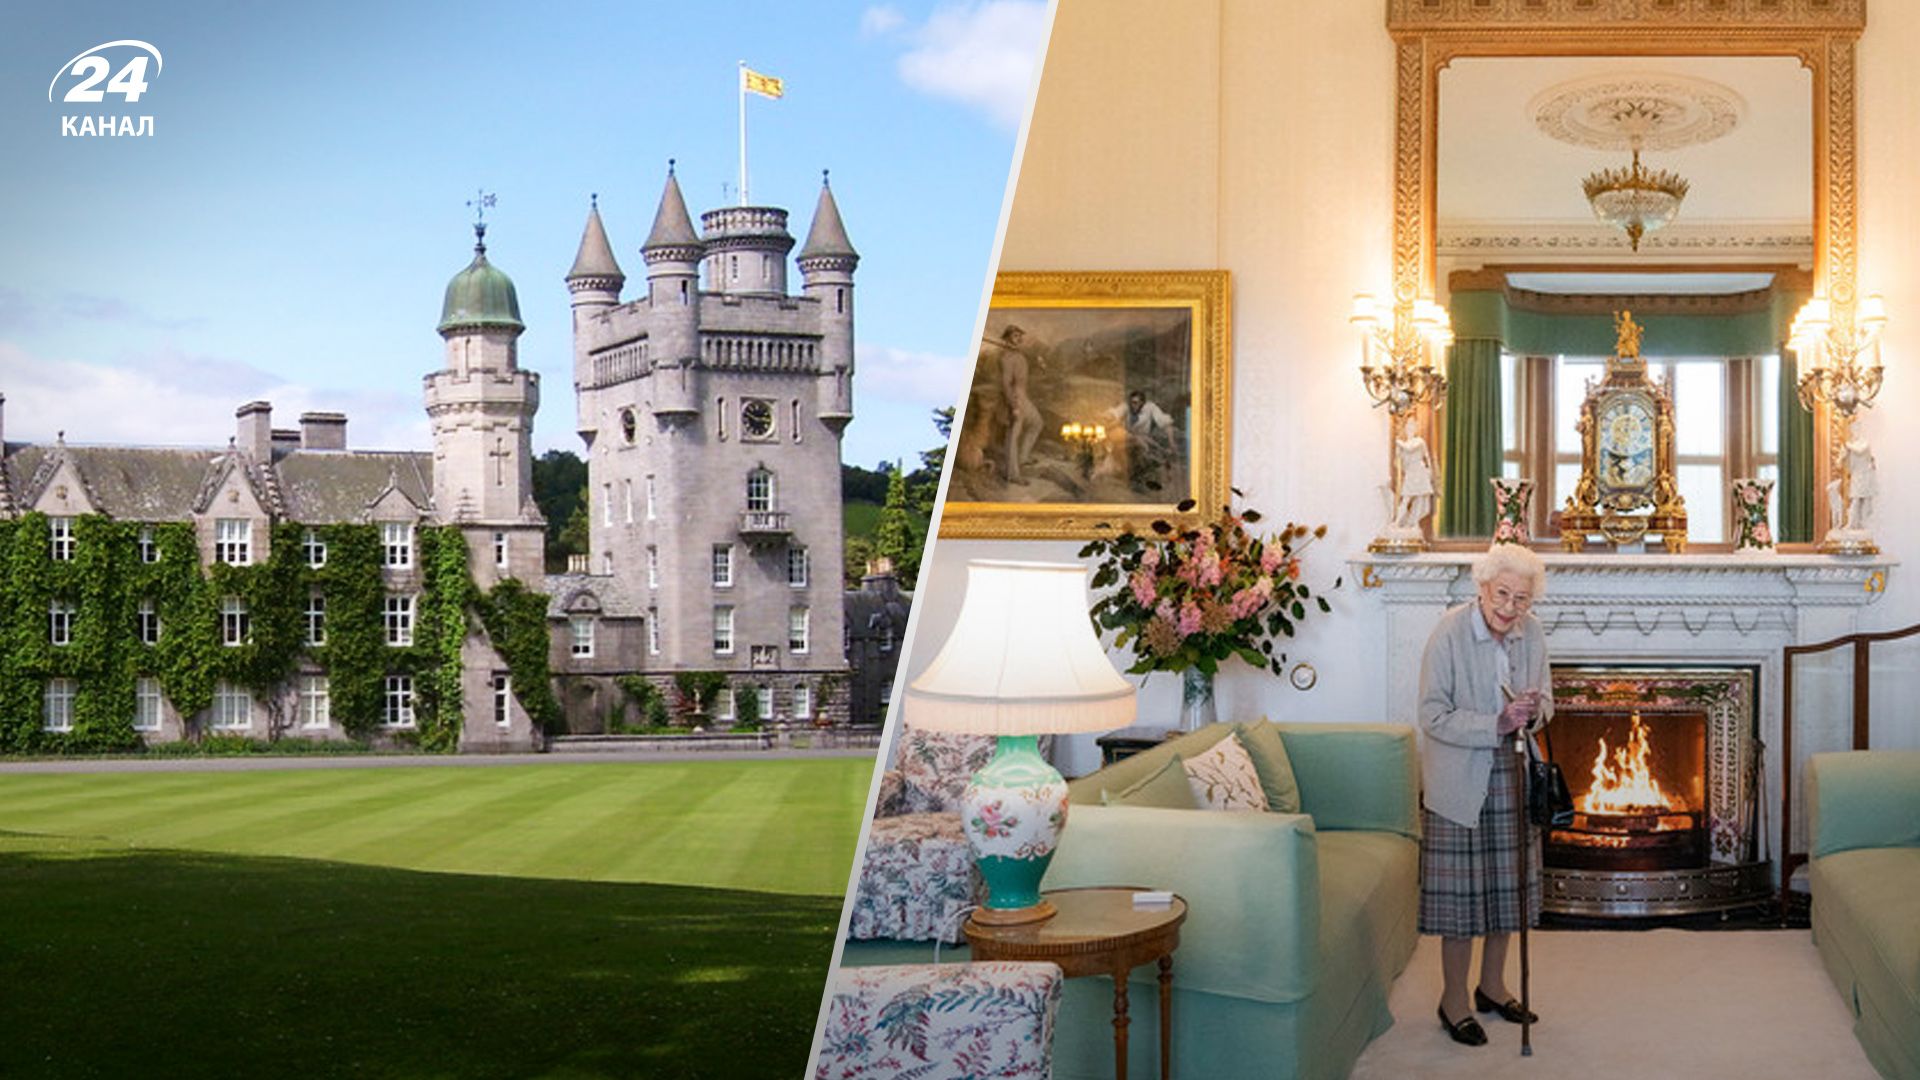  Интересные факты о замке Балморал в Шотландии, где скончалась королева Елизавета II